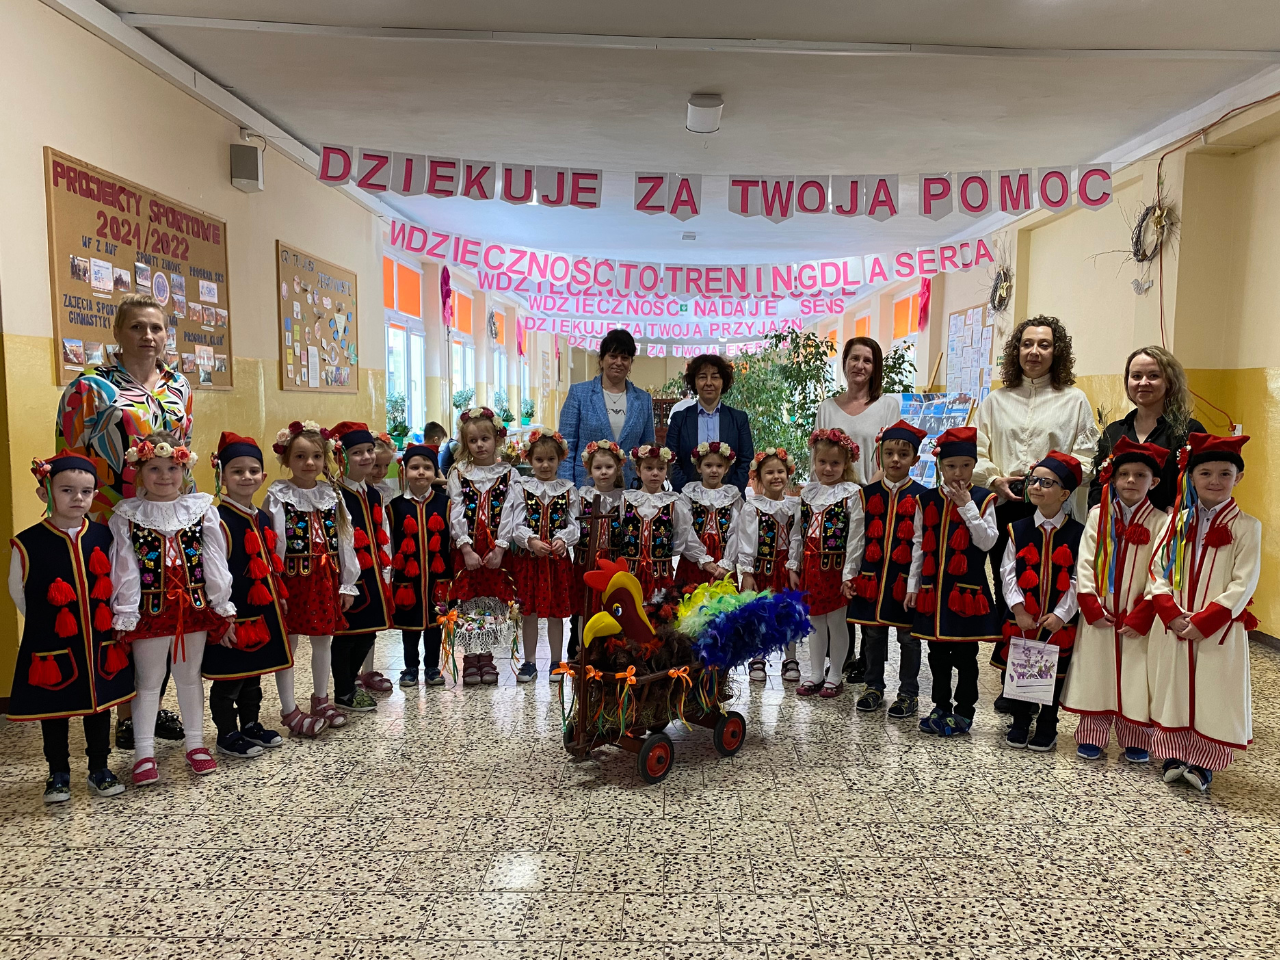 Na zdjęciu widoczna grupa przedszkolaków ubrana w stroje krakowiaków. Na zdjęciu również widoczni nauczyciele, opiekunowie i dyrektorzy przedszkola i szkoły.